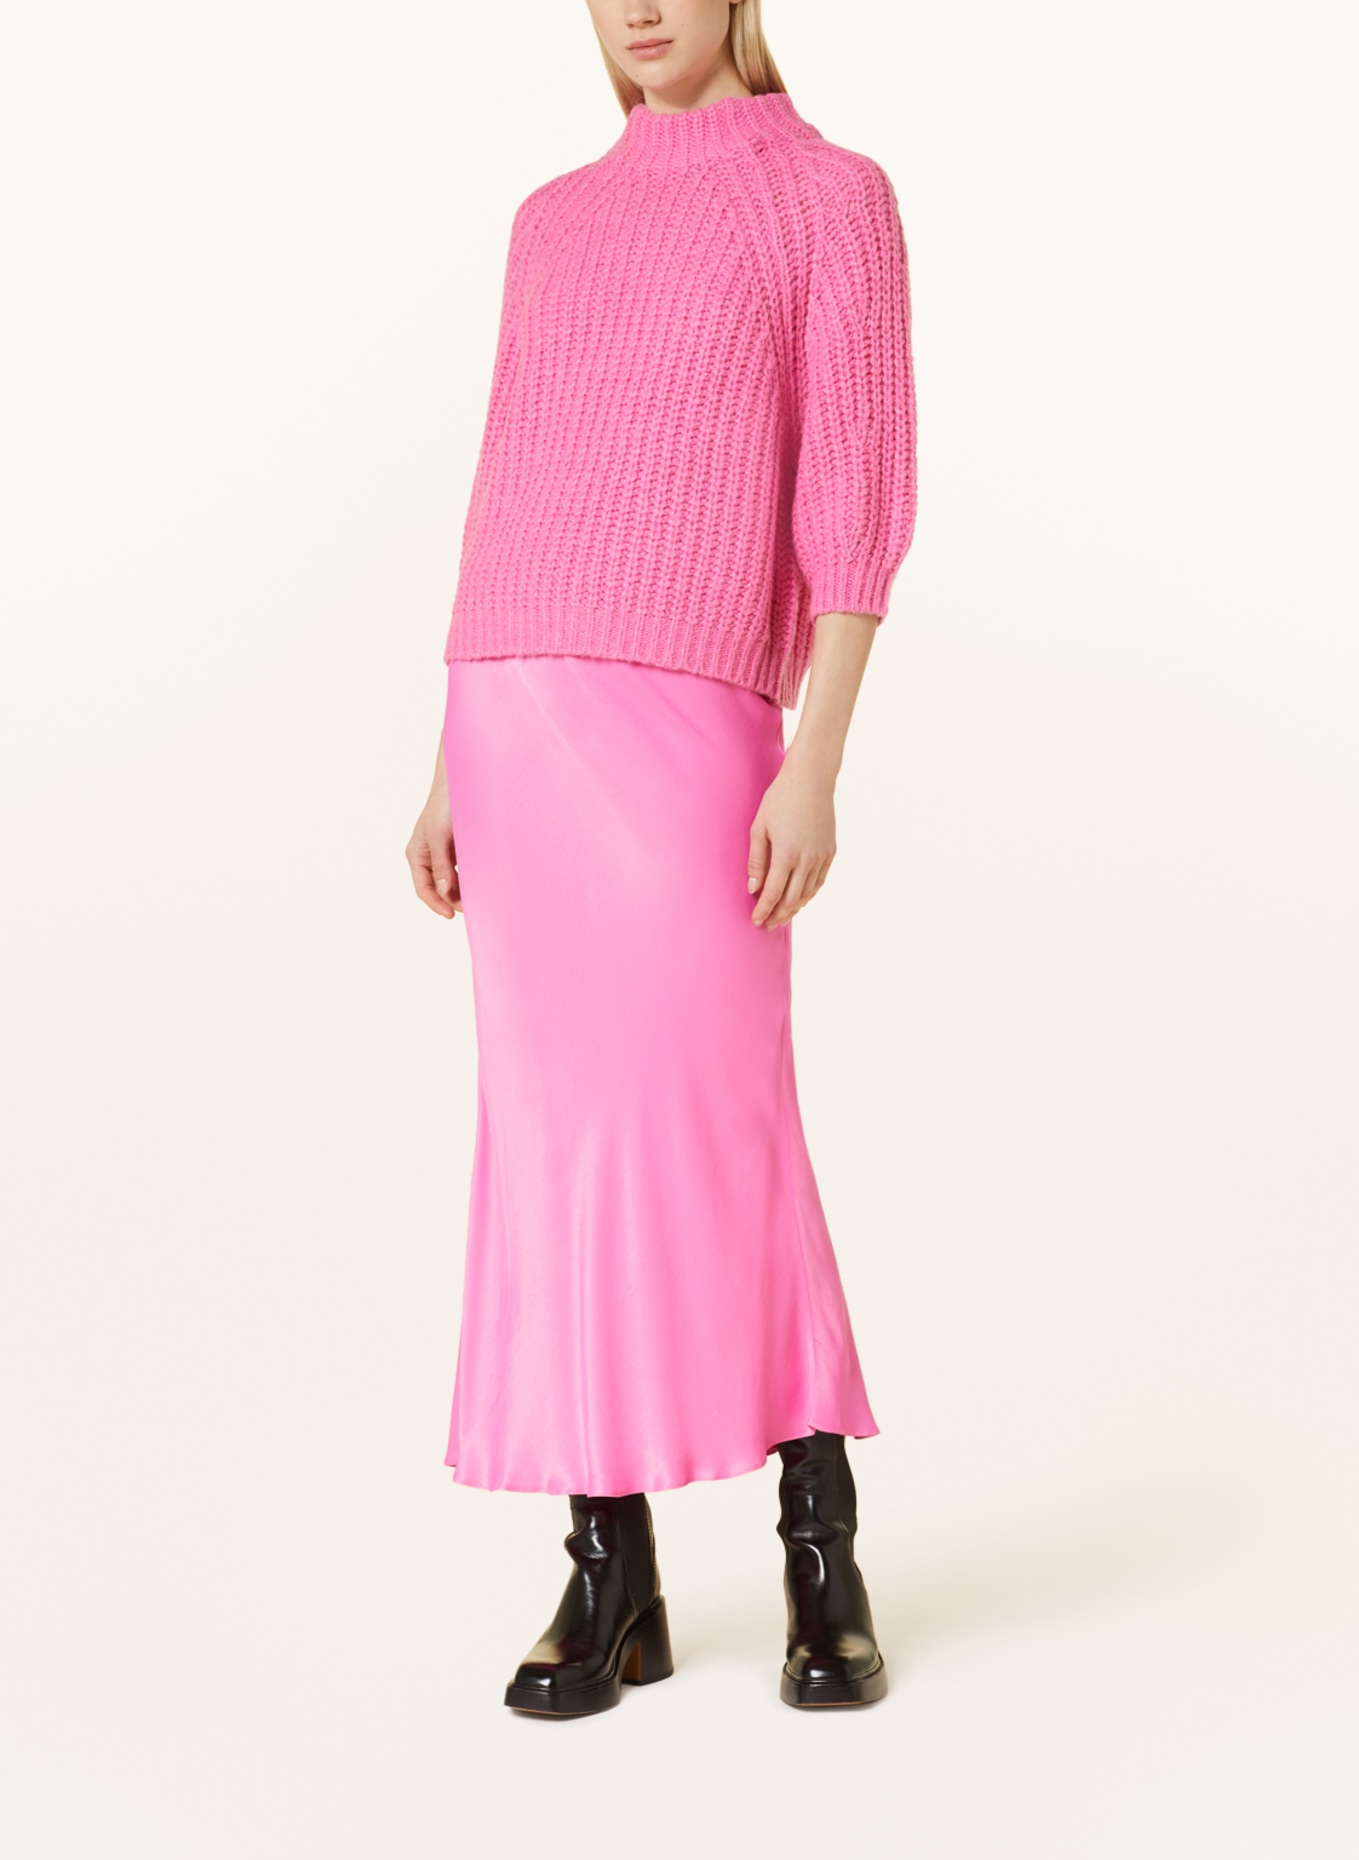 CATNOIR Pullover mit 3/4-Arm, Farbe: PINK (Bild 2)